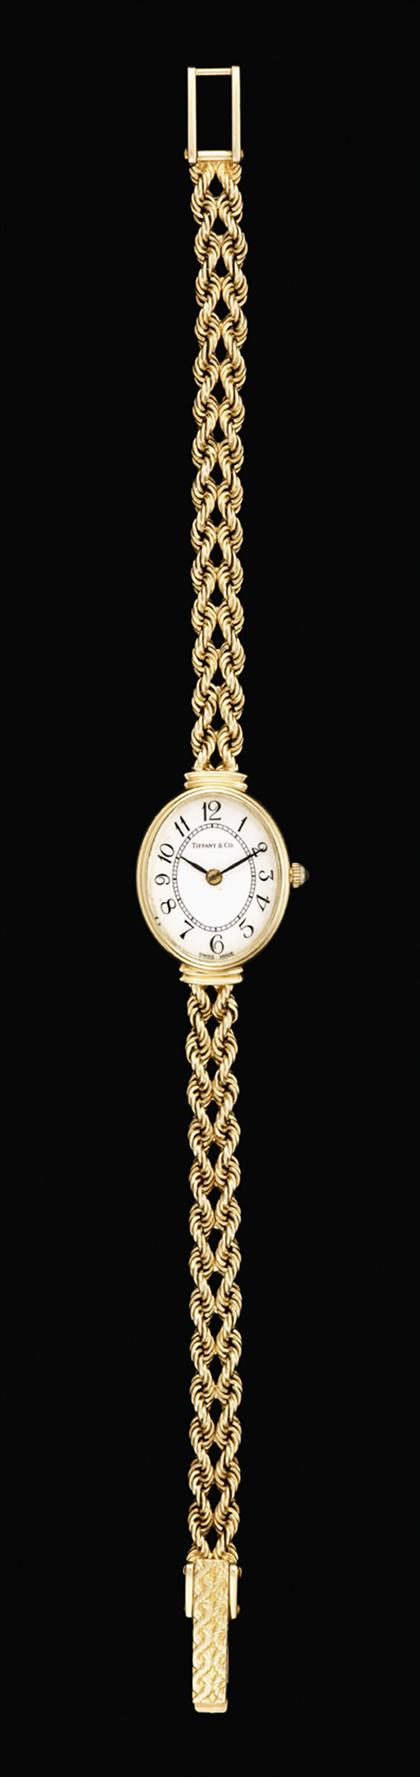 Lady s 14 karat yellow gold wristwatch  4bd49